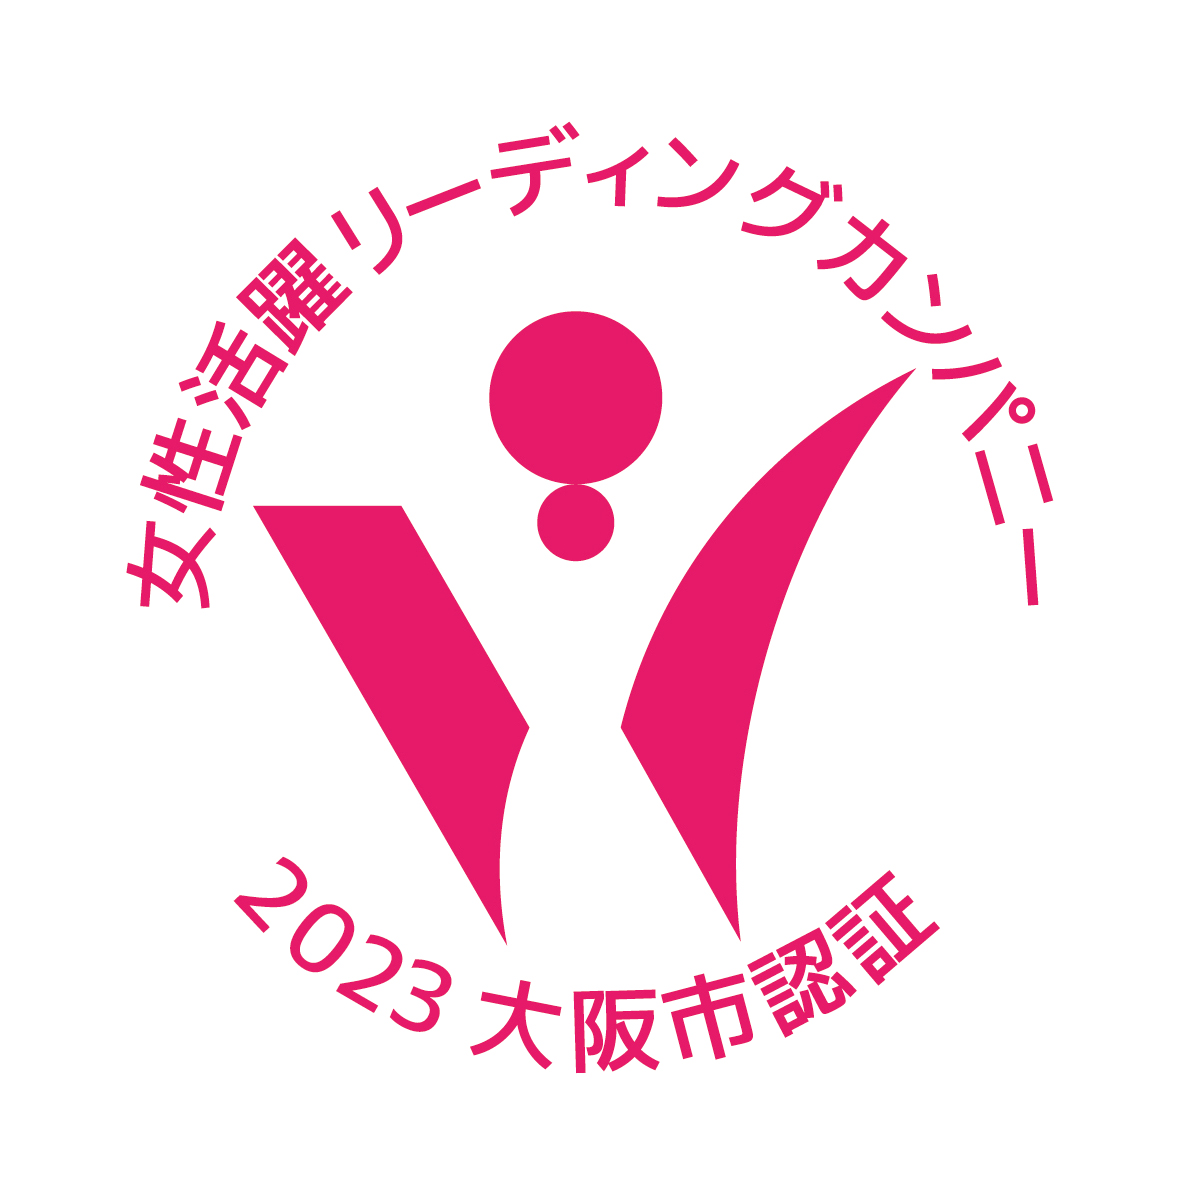 「大阪市女性活躍リーディングカンパニー」認証